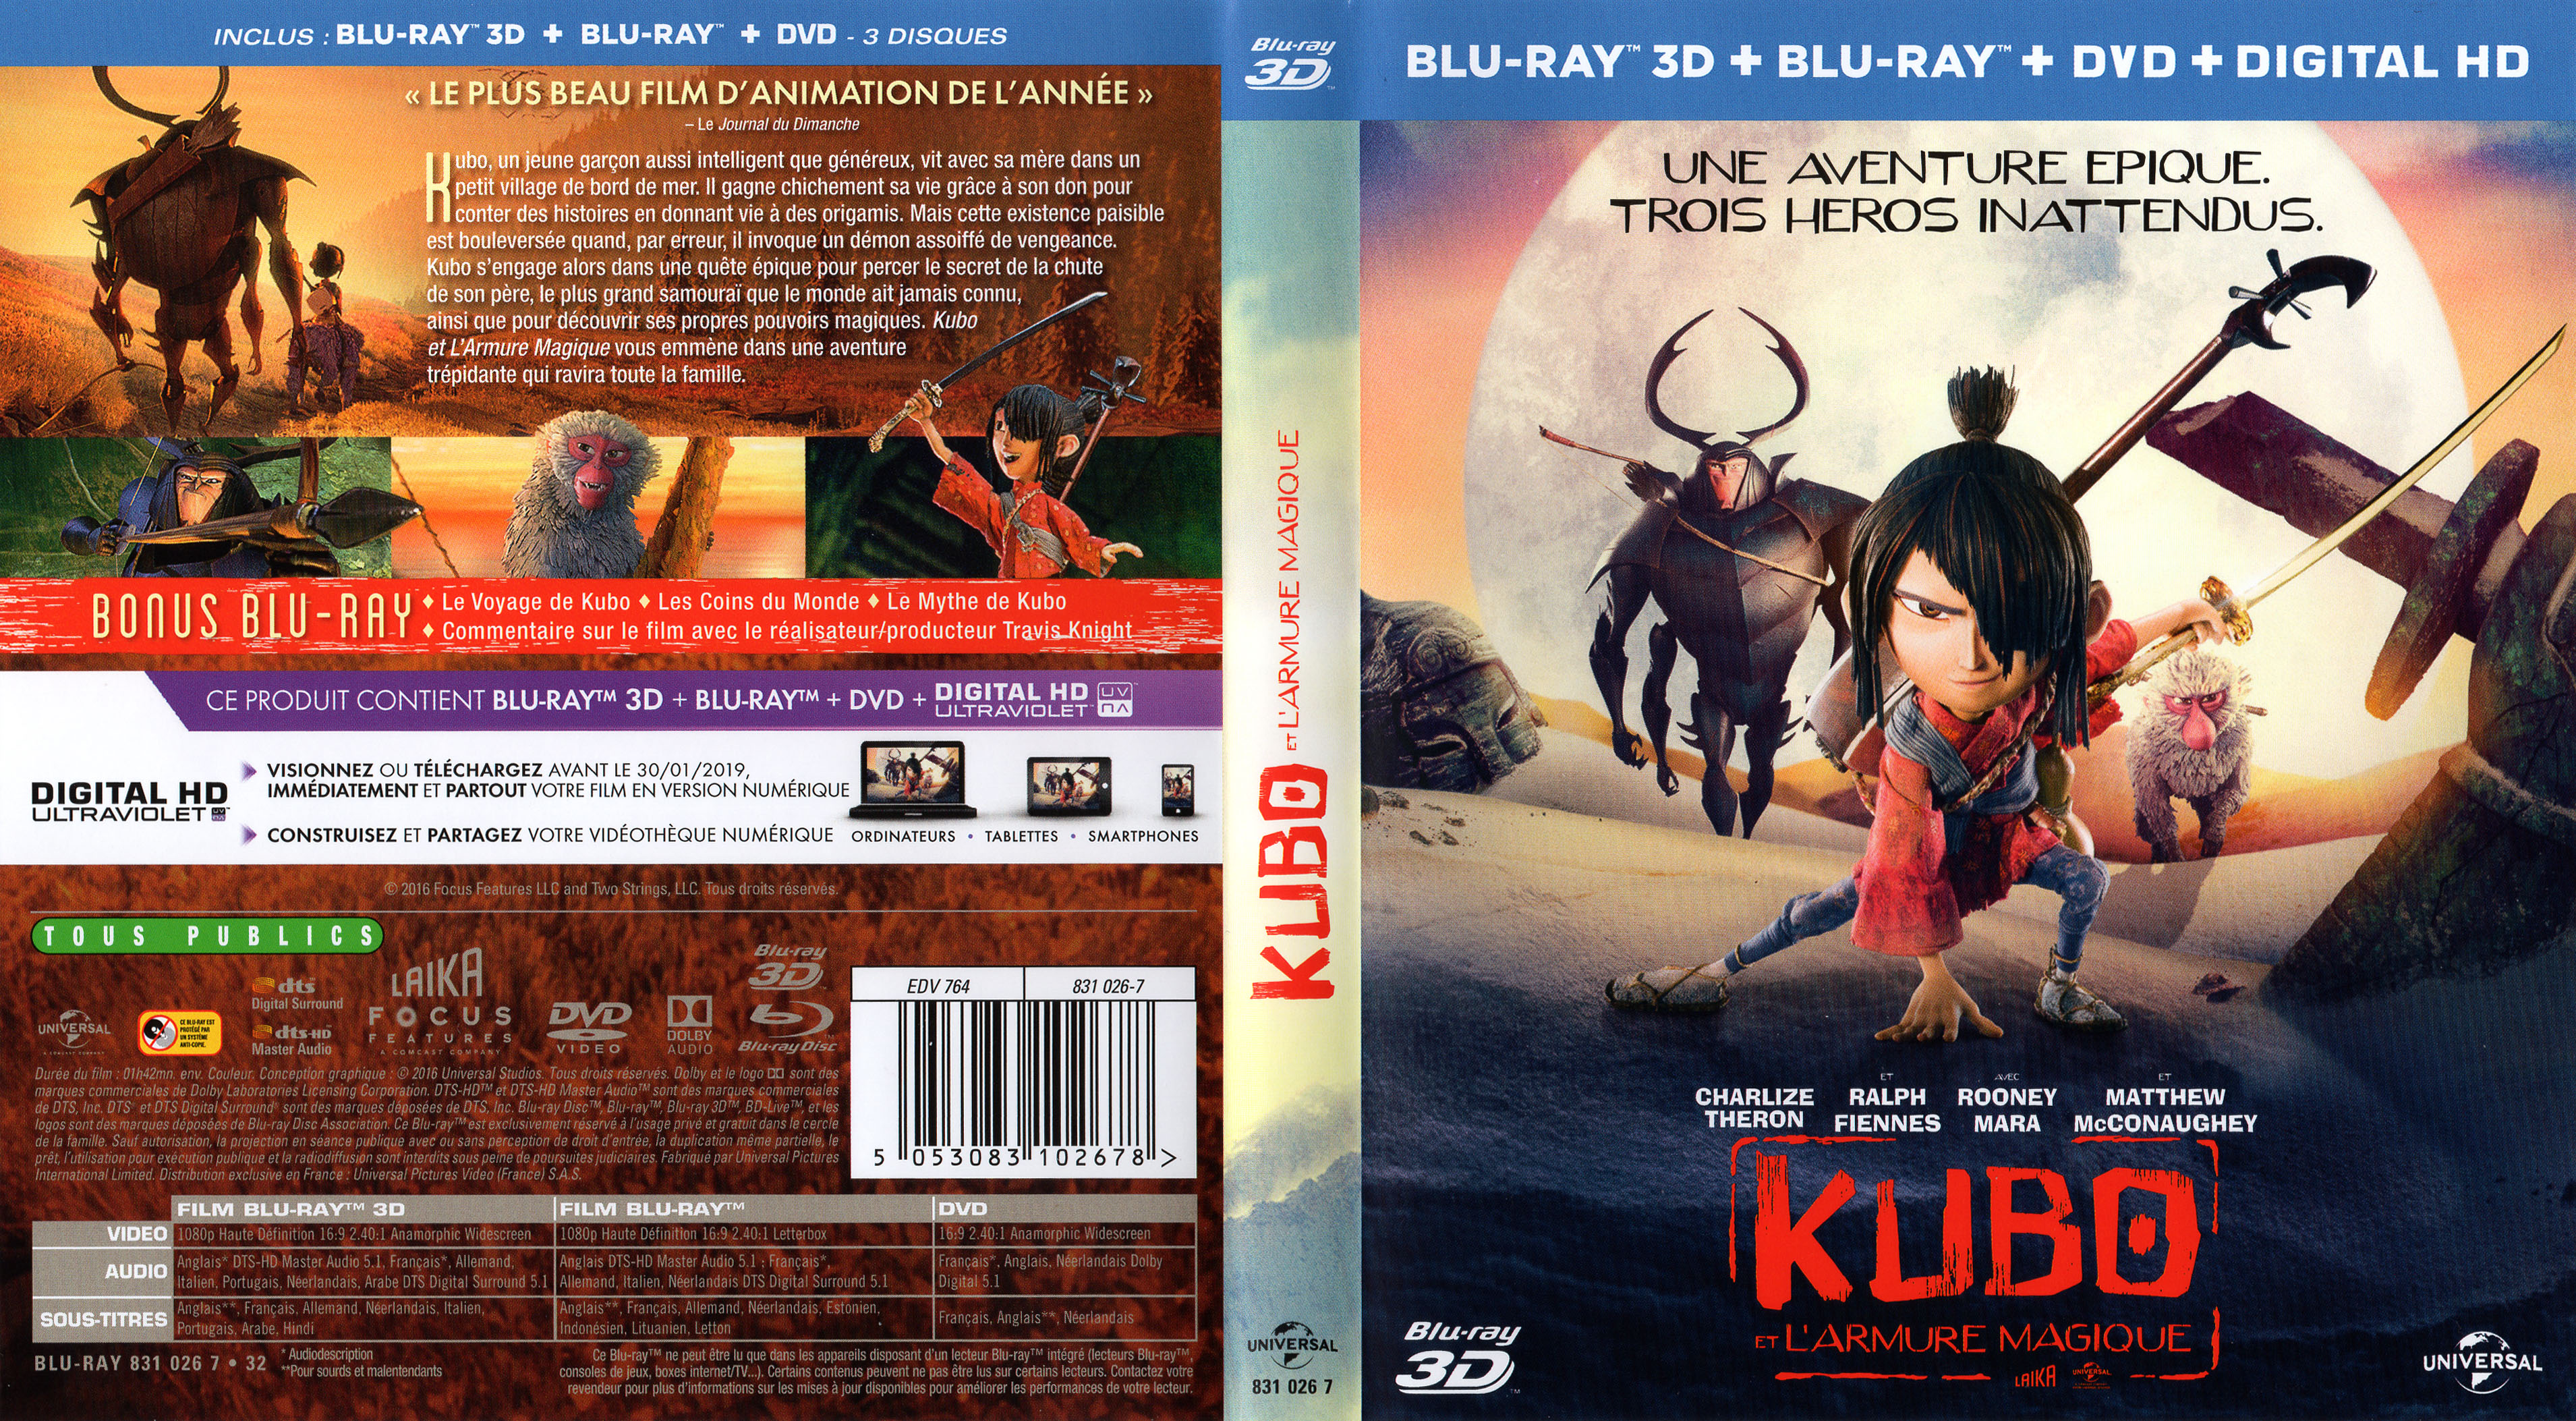 Jaquette DVD Kubo et l